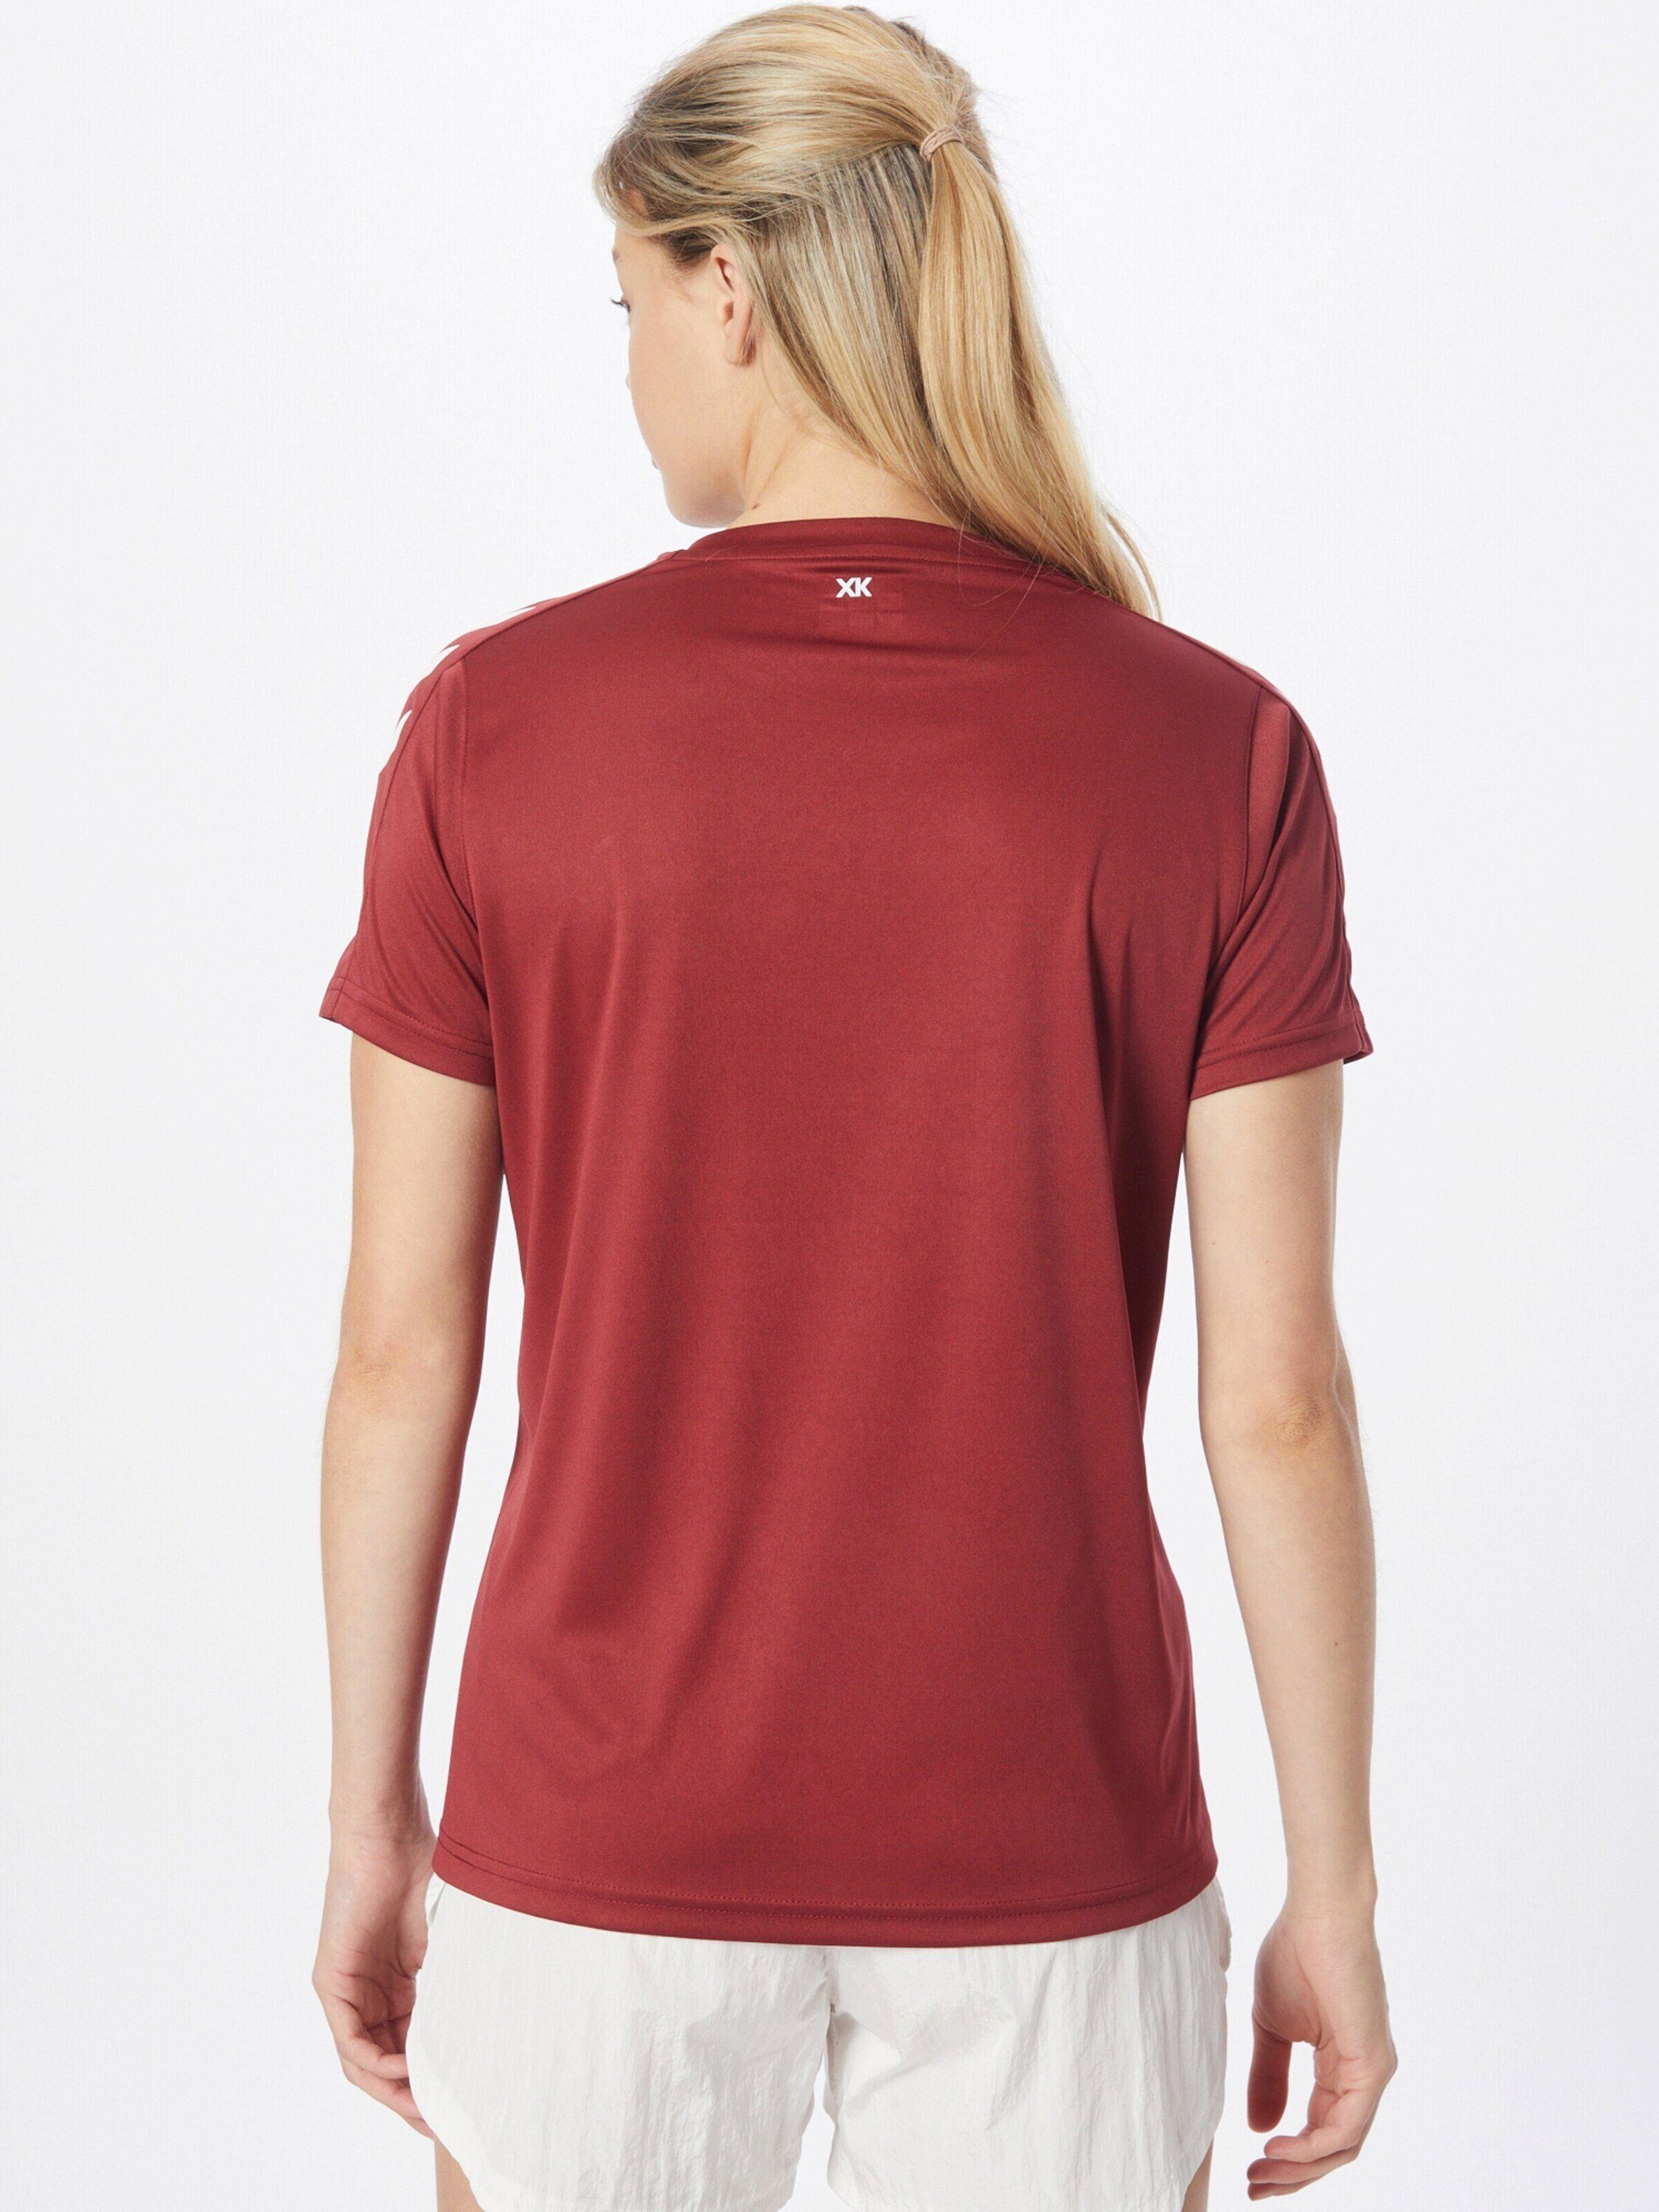 Weiteres rot T-Shirt Detail, hummel Seitenstreifen Plain/ohne (1-tlg) Details,